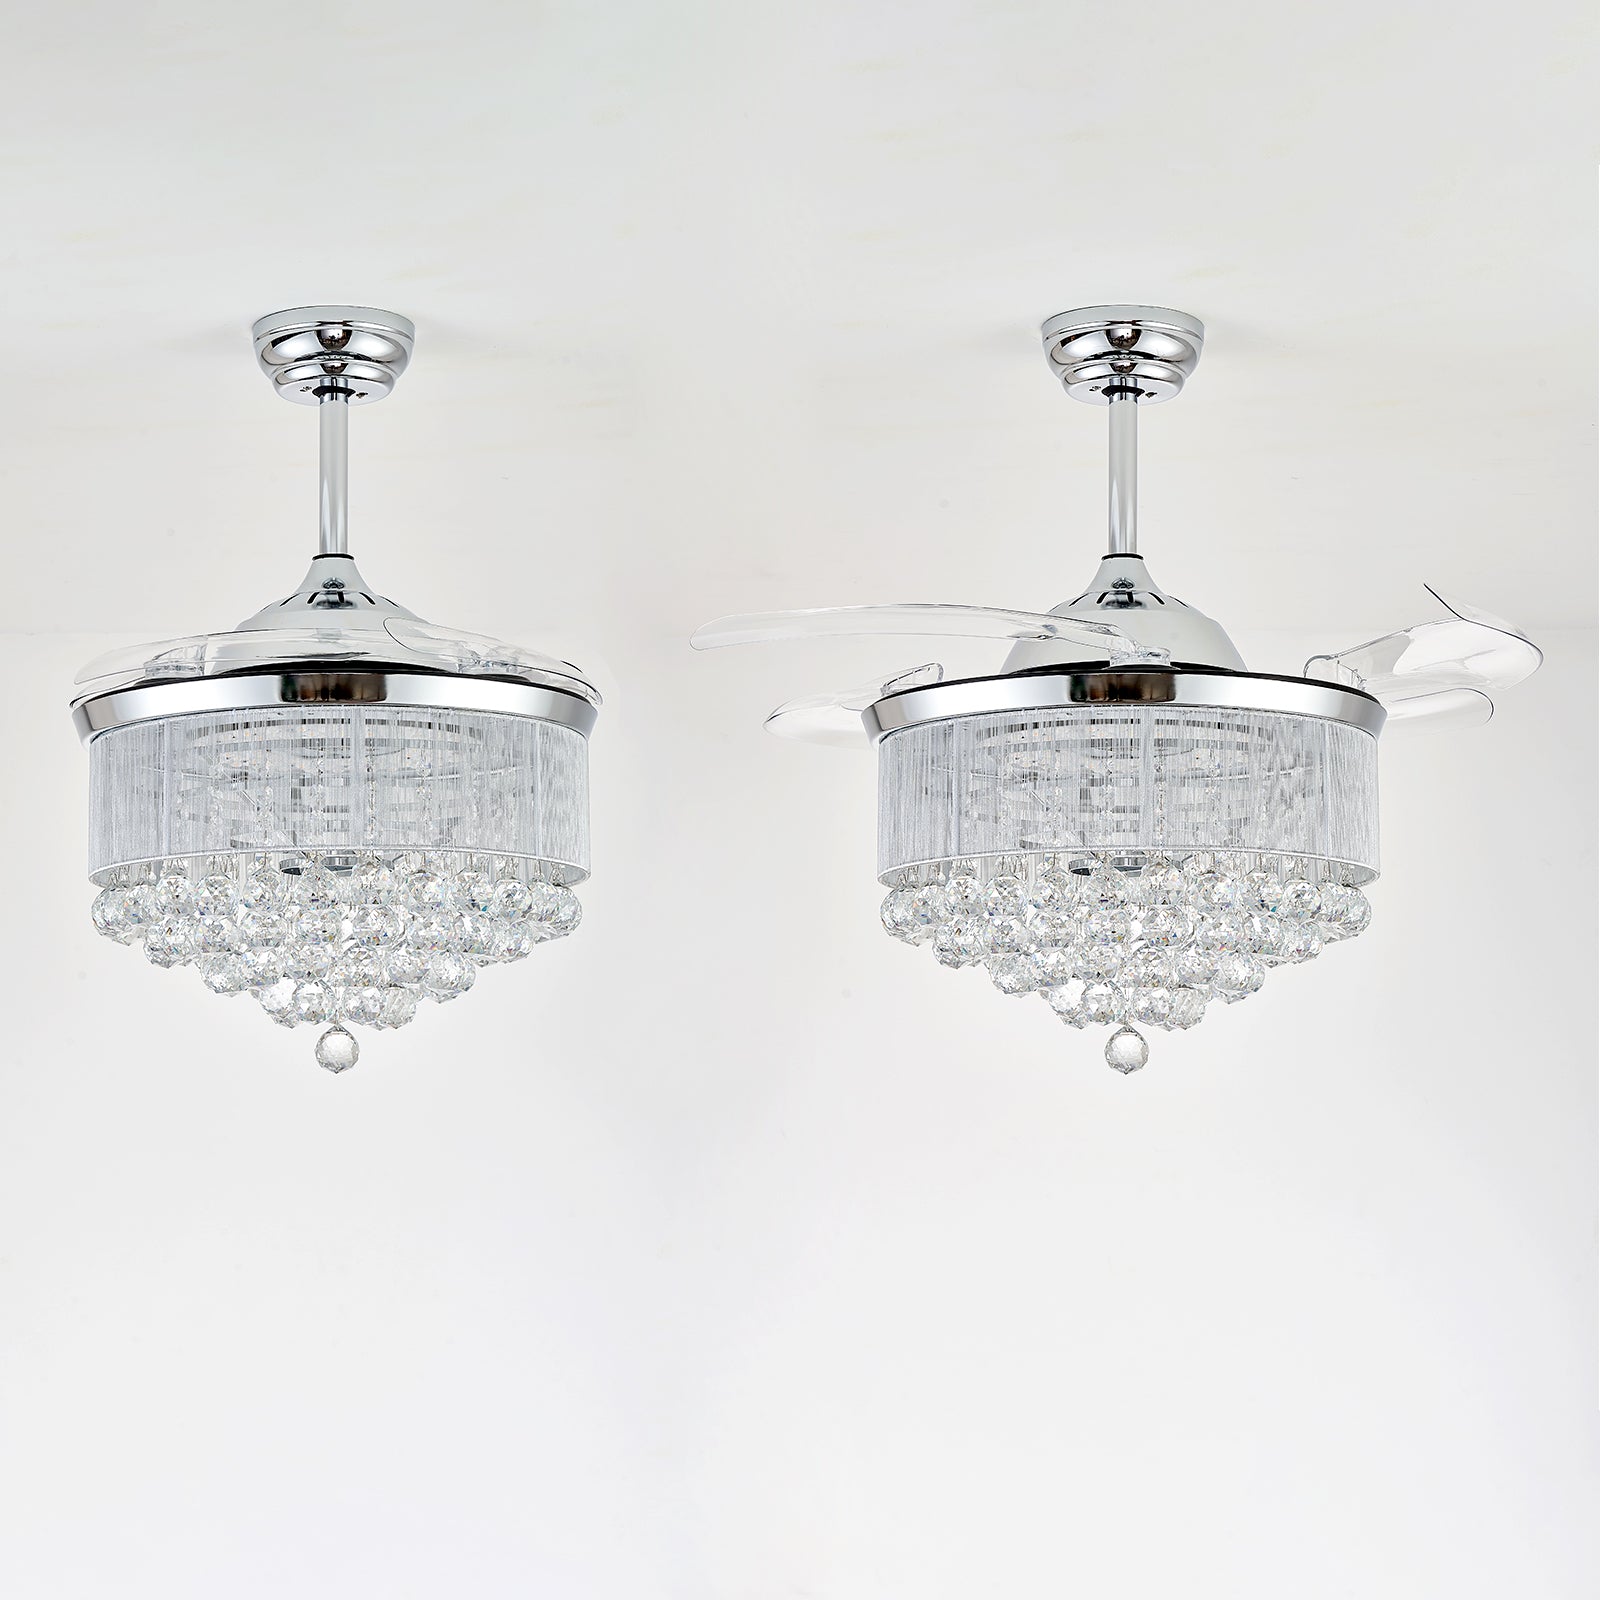 Blanco Modern Crystal Ceiling Fan Dimmable Chandelier,APP Control, 6-Speed, 72W LED